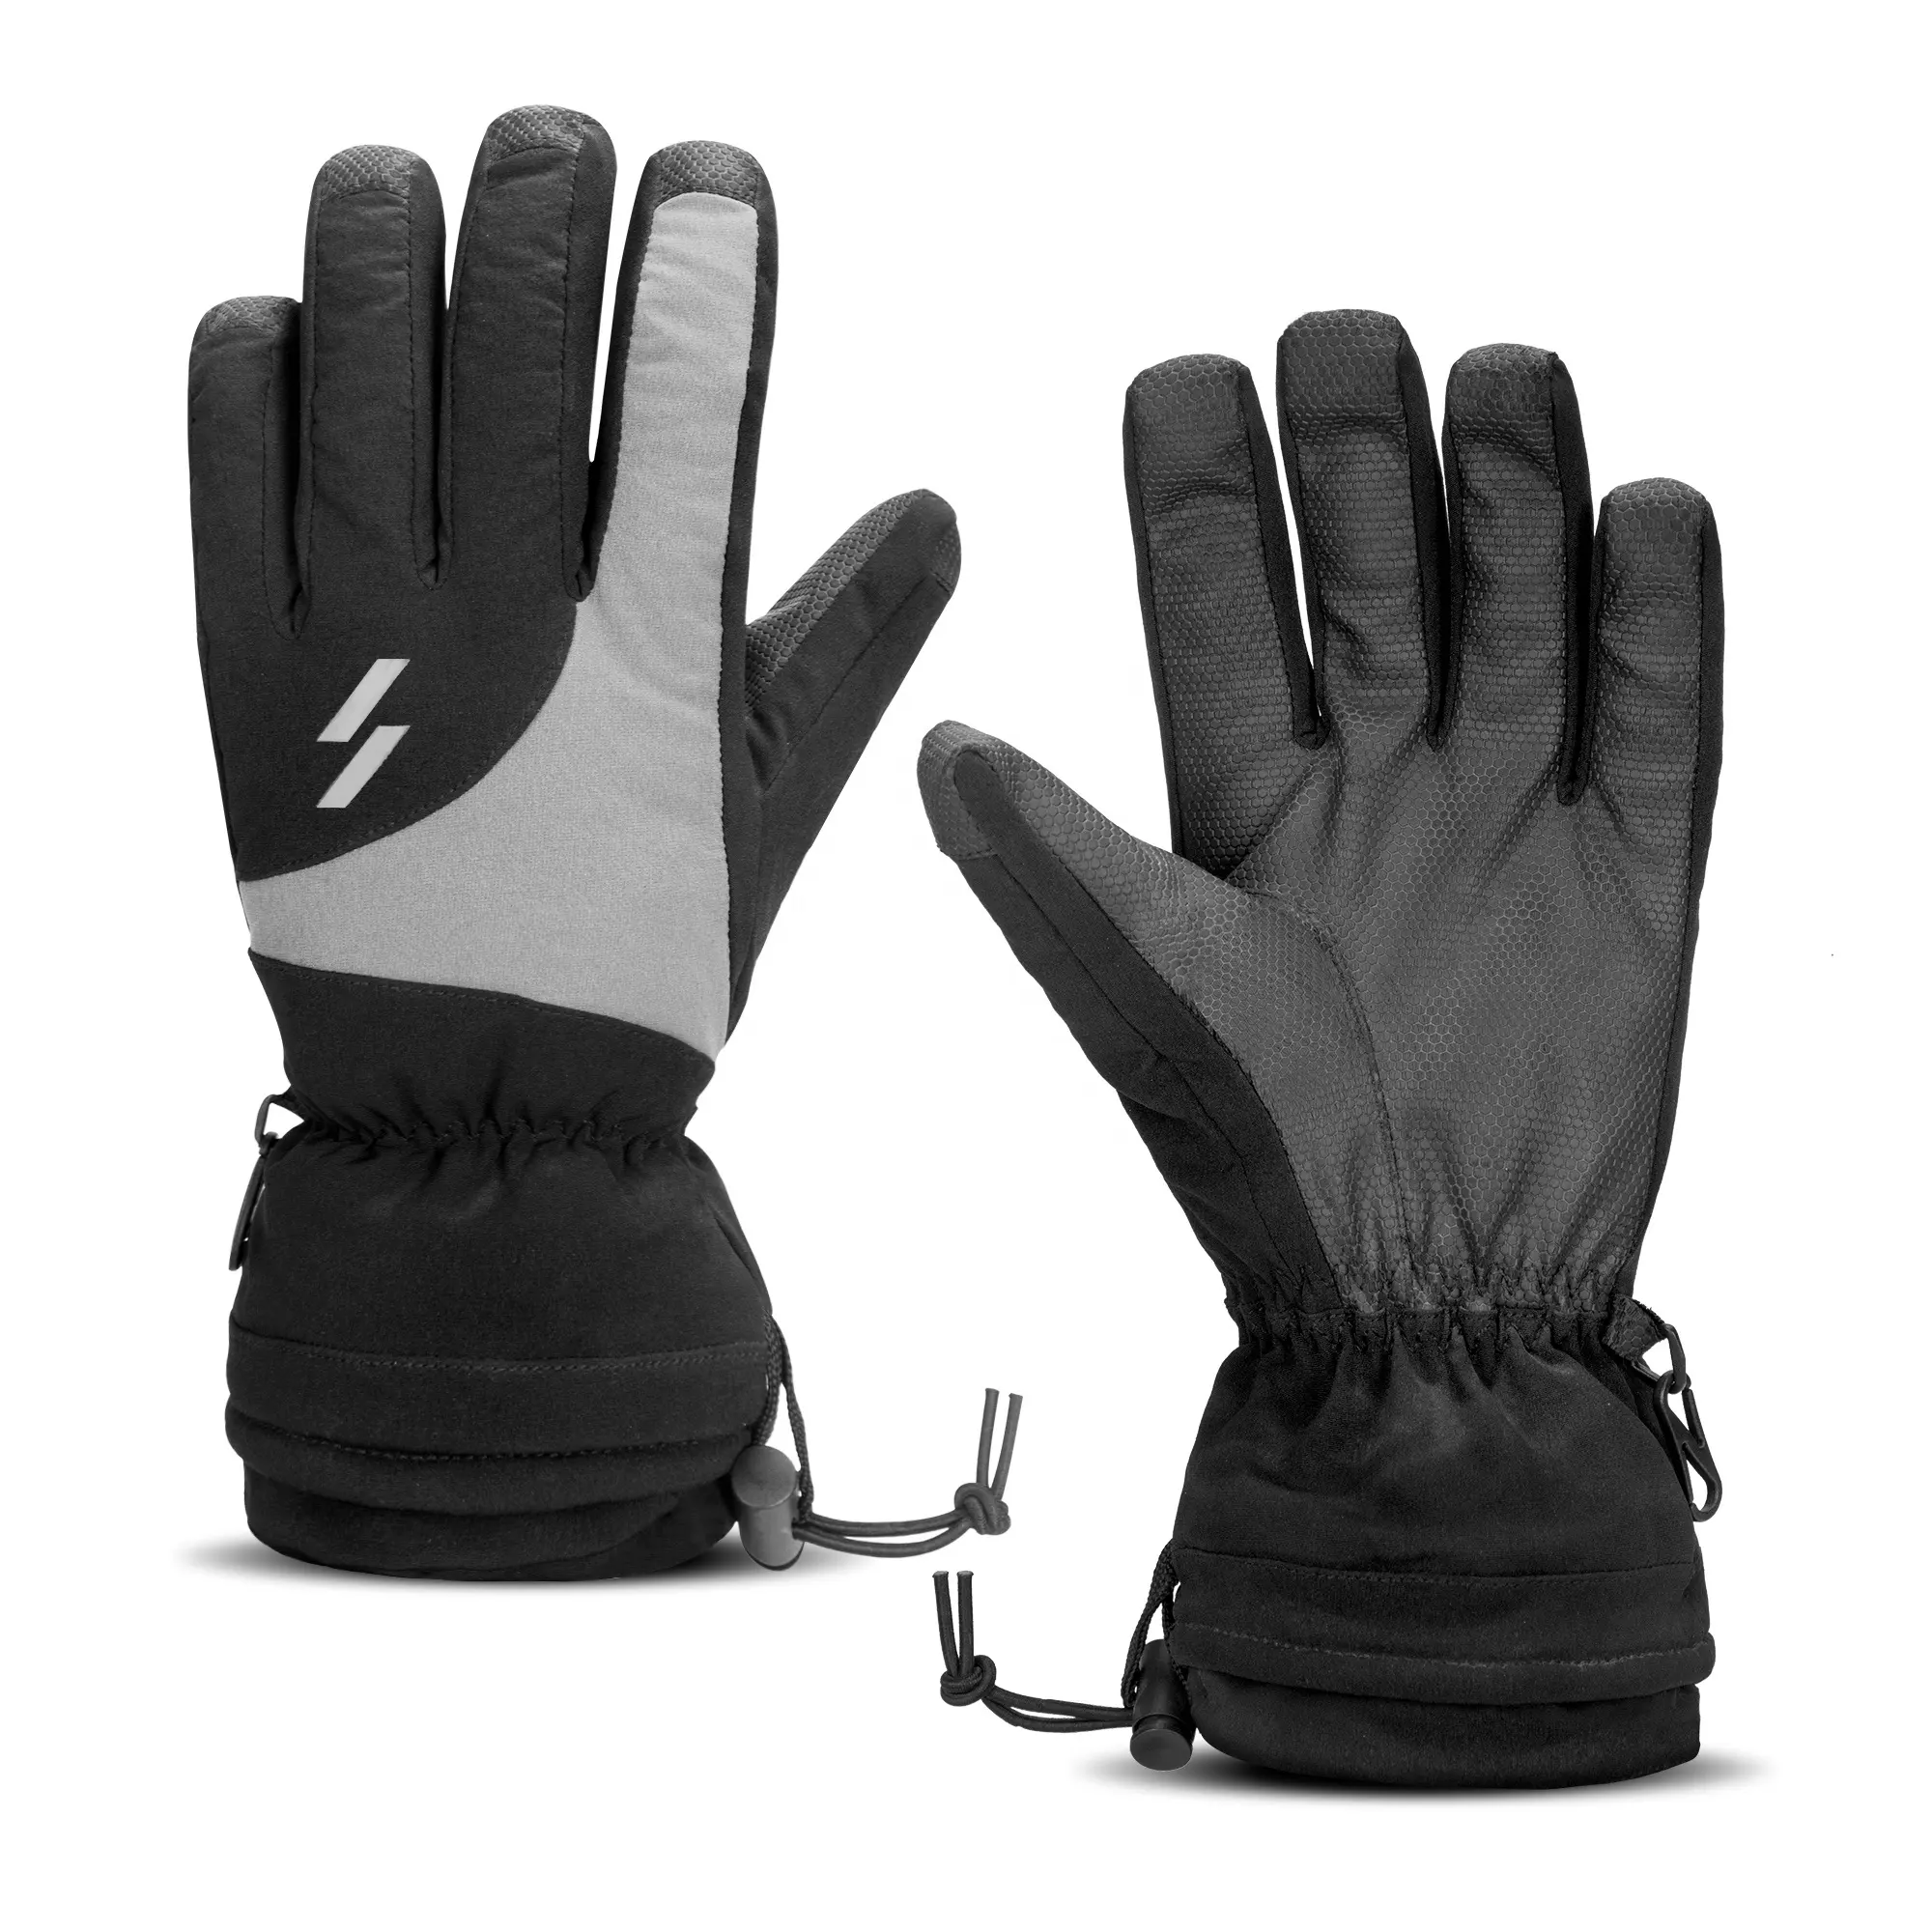 ASRQGOAL Men Women Running Cycling Driving Black Warm Long Finger Touch Screen Polar Fleece Non-slip Winter Gloves